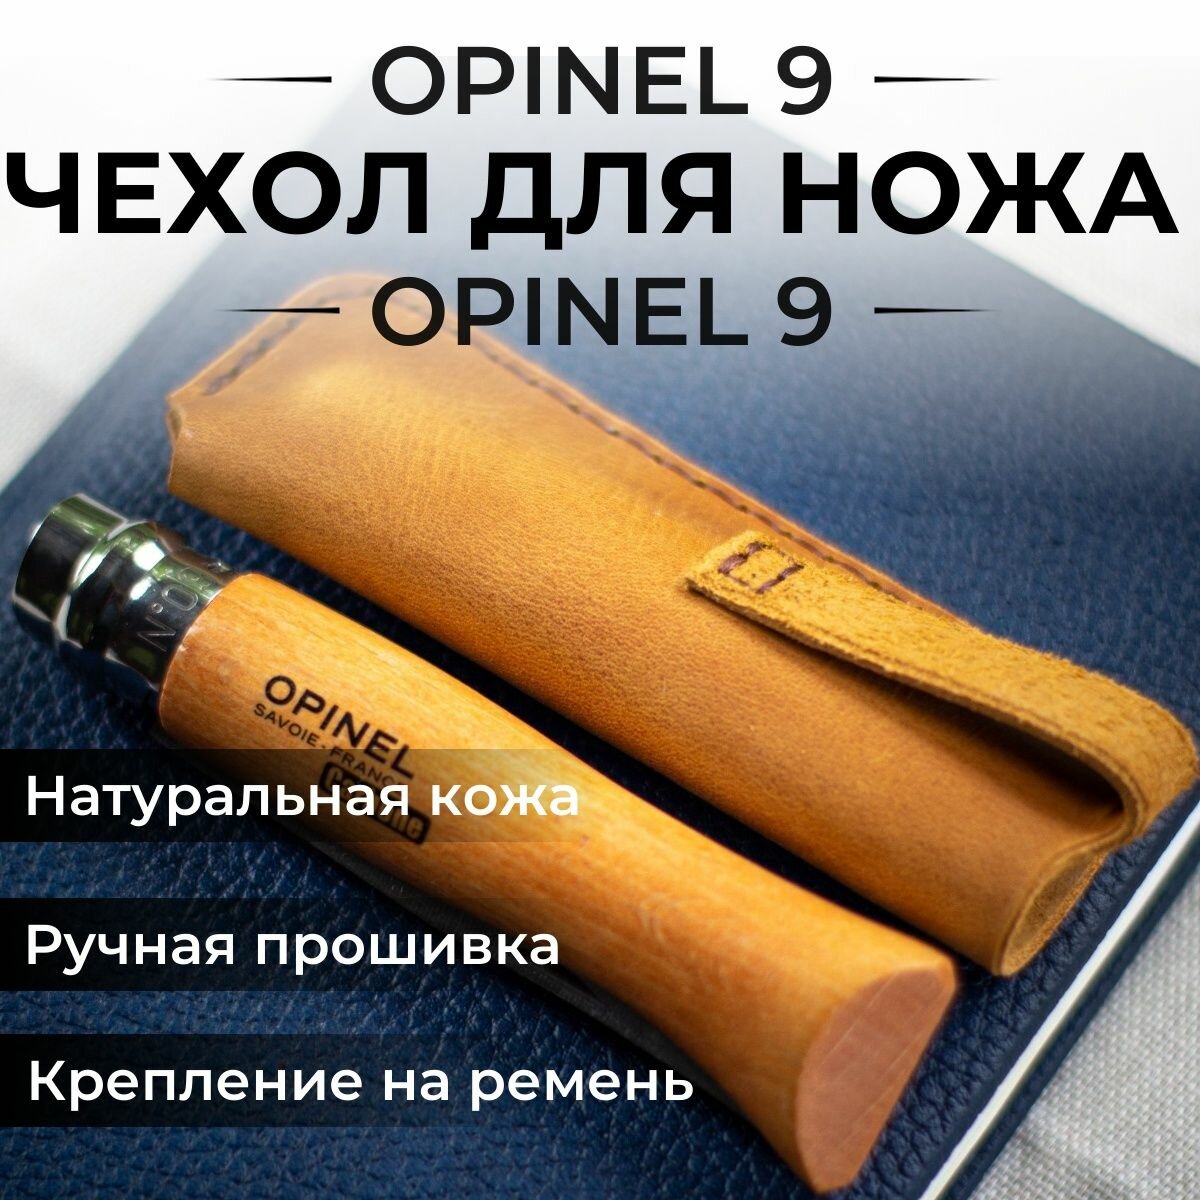 Чехол для складного ножа кожаный Opinel 9, Опинель 9